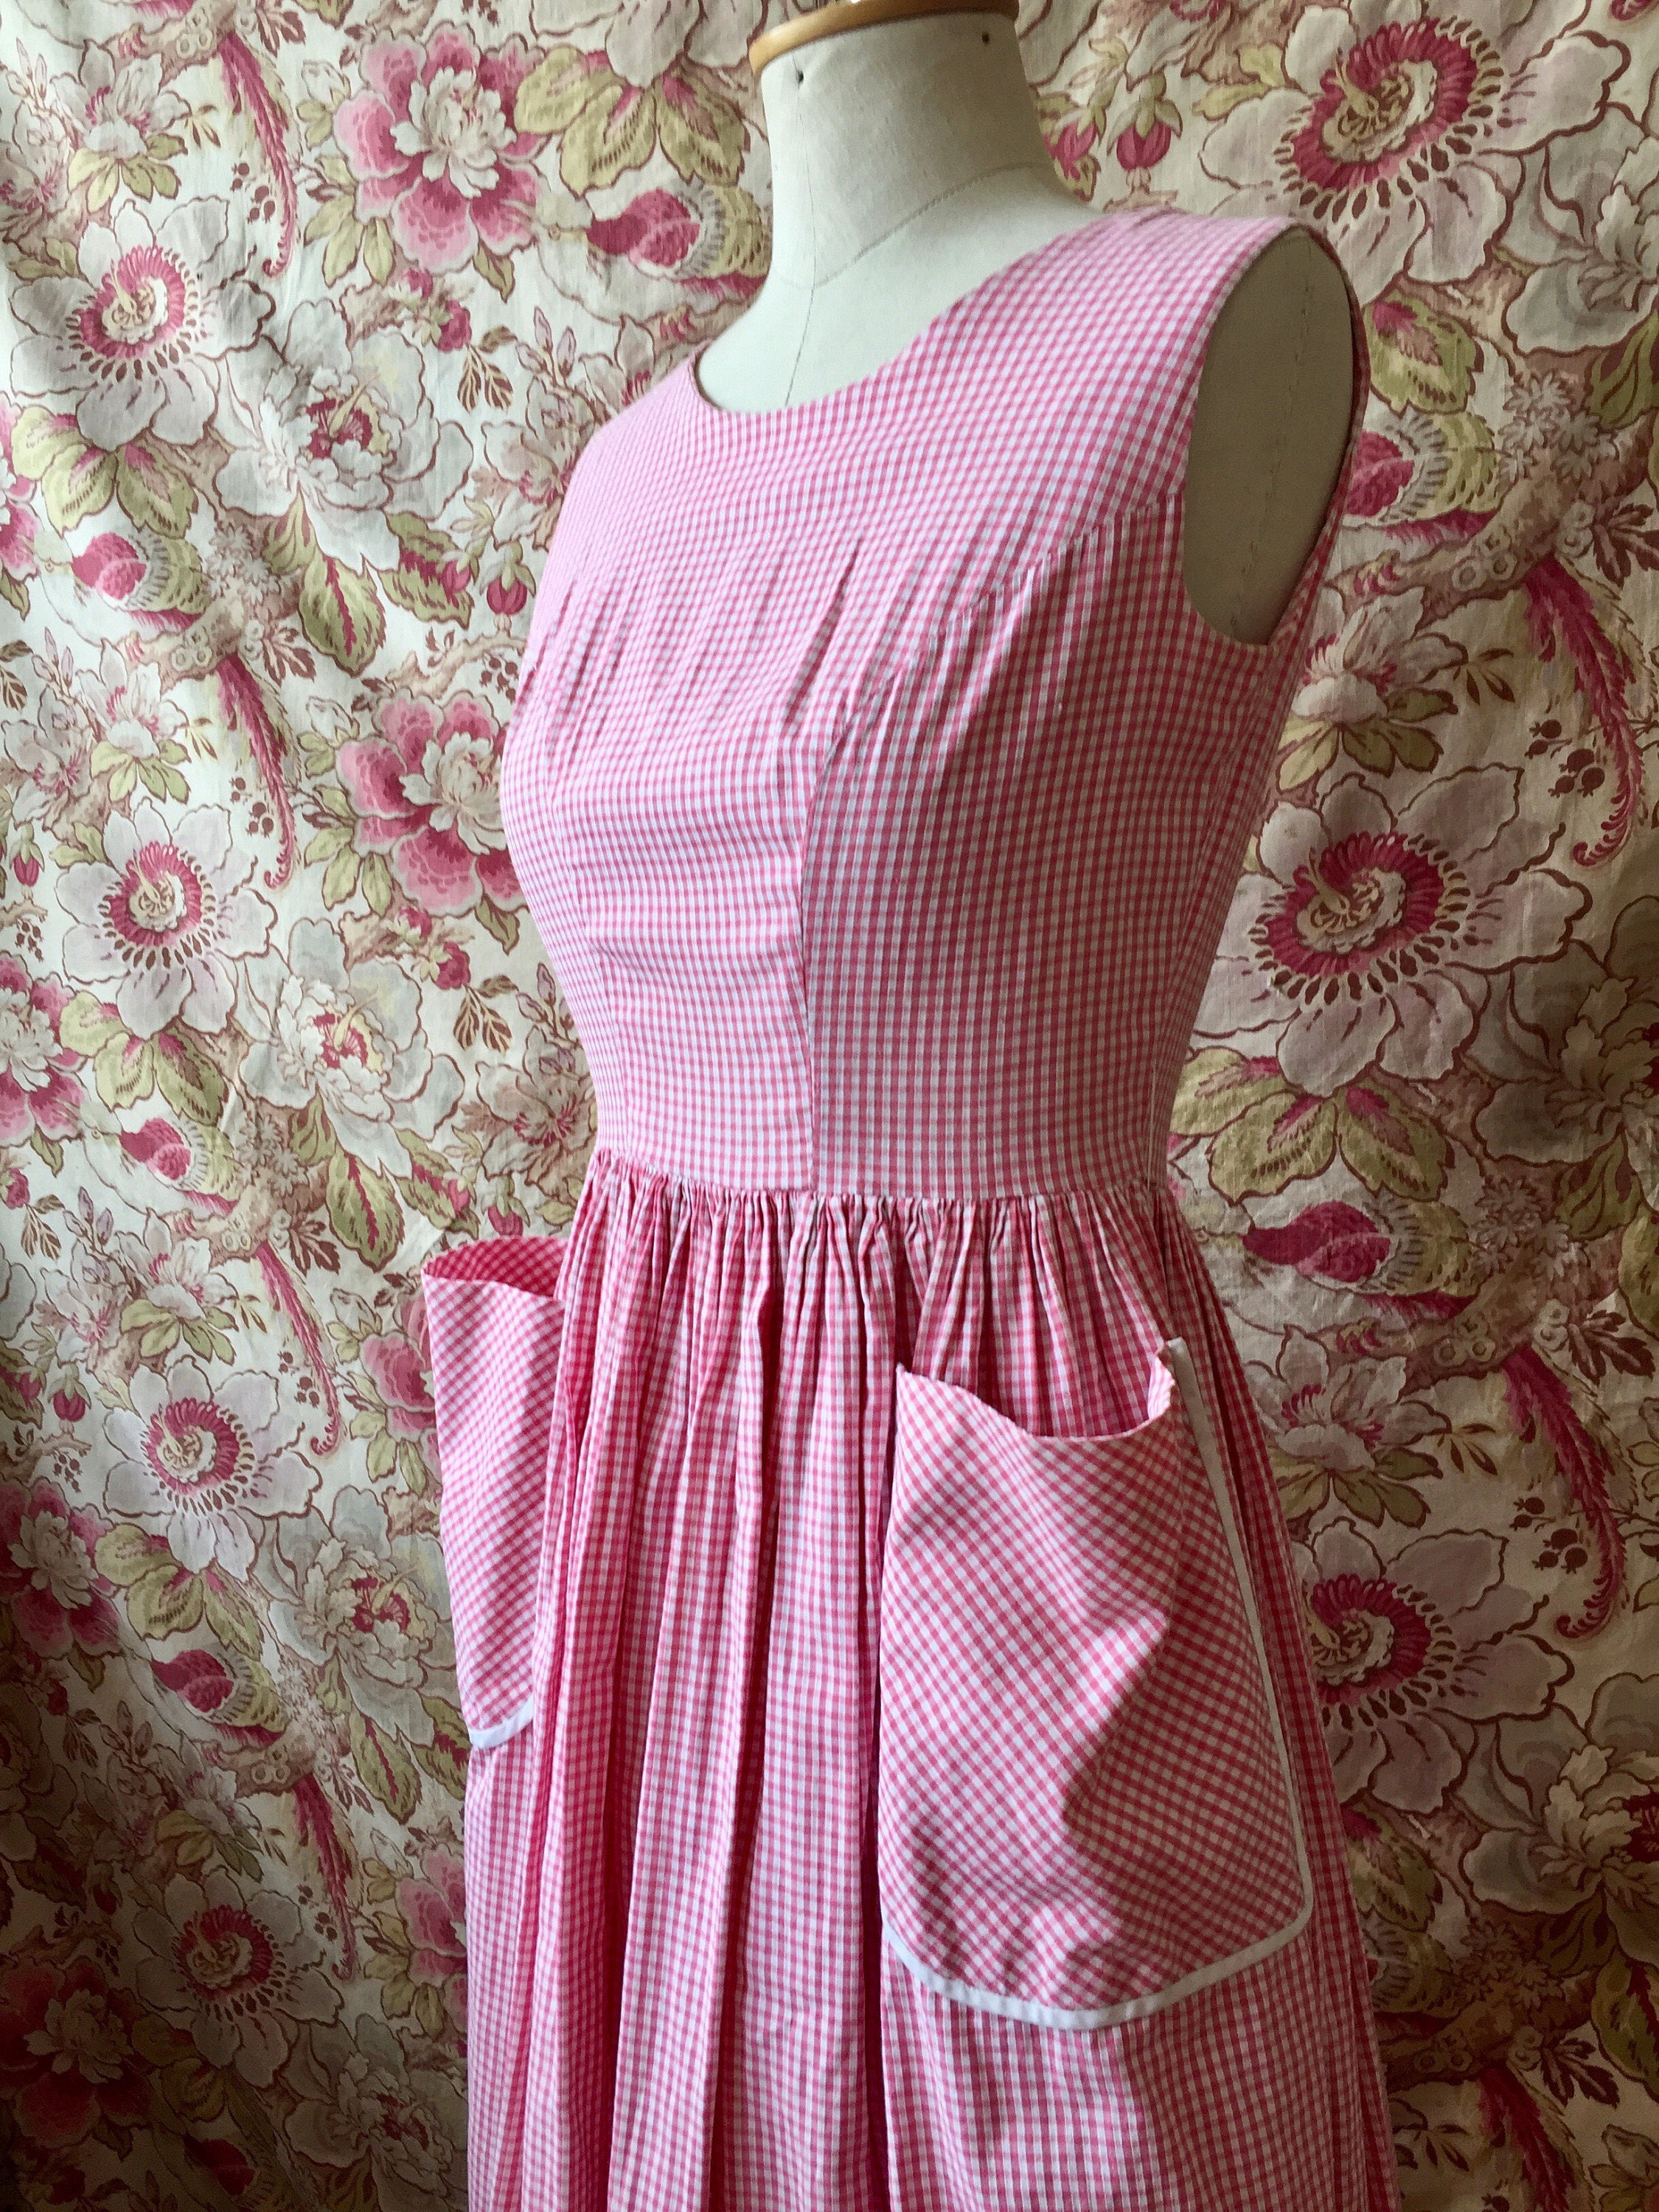 Vintage 50s Pink Gingham Dress